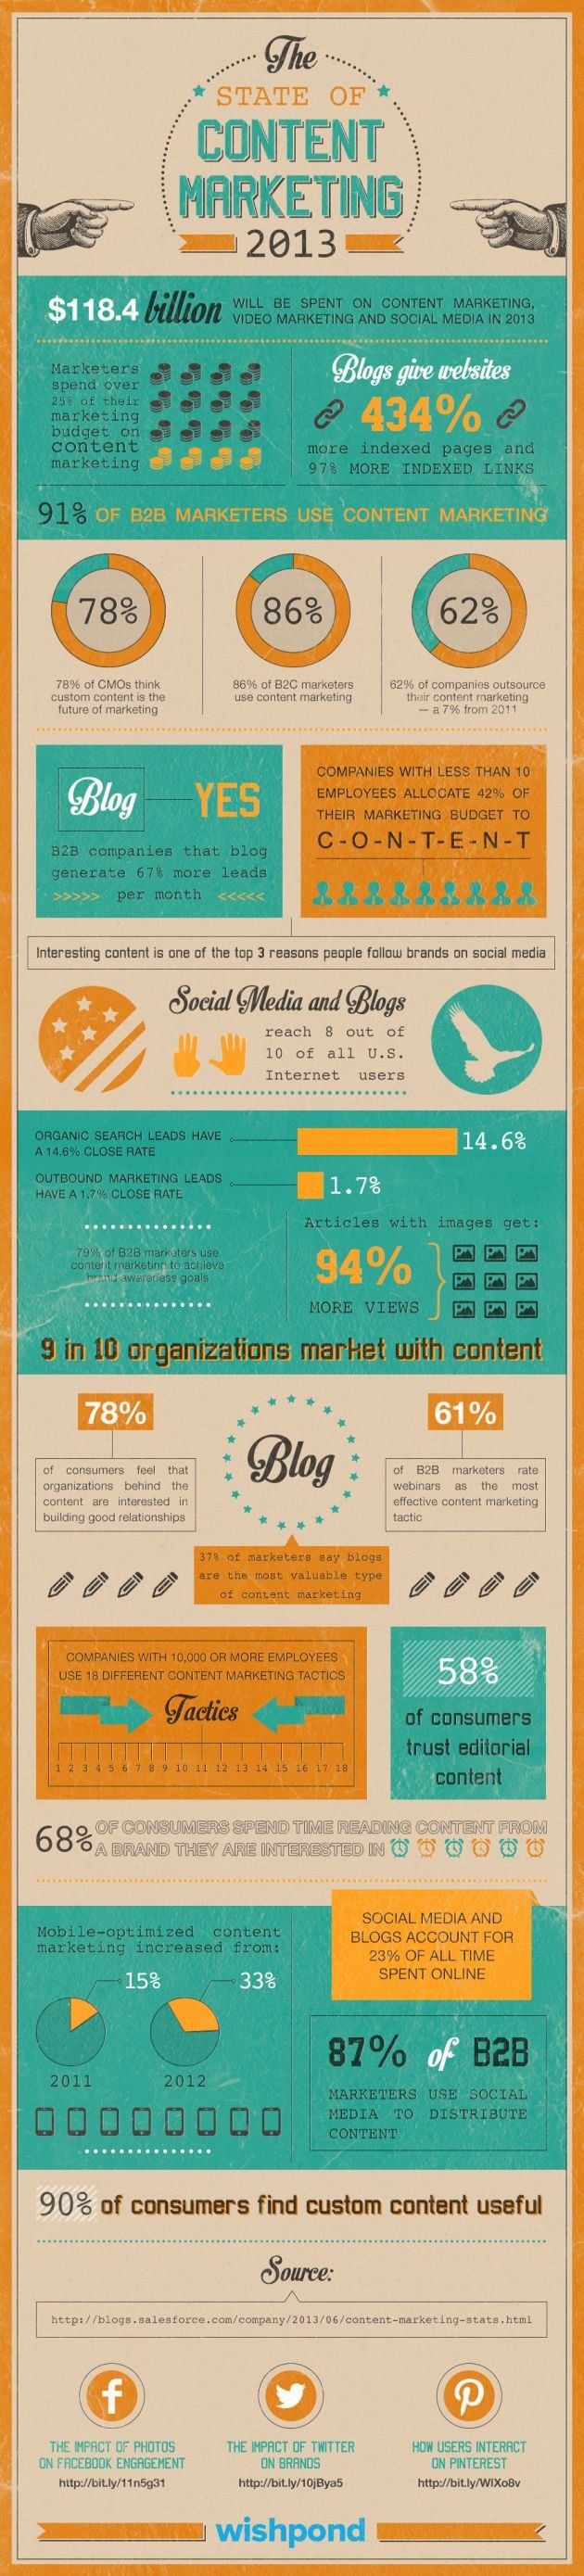 Yahoo Advertising Solutions составили инфографику, в которой разъяснили, почему компании тратят 25% своего бюджета на контент-маркетинг.